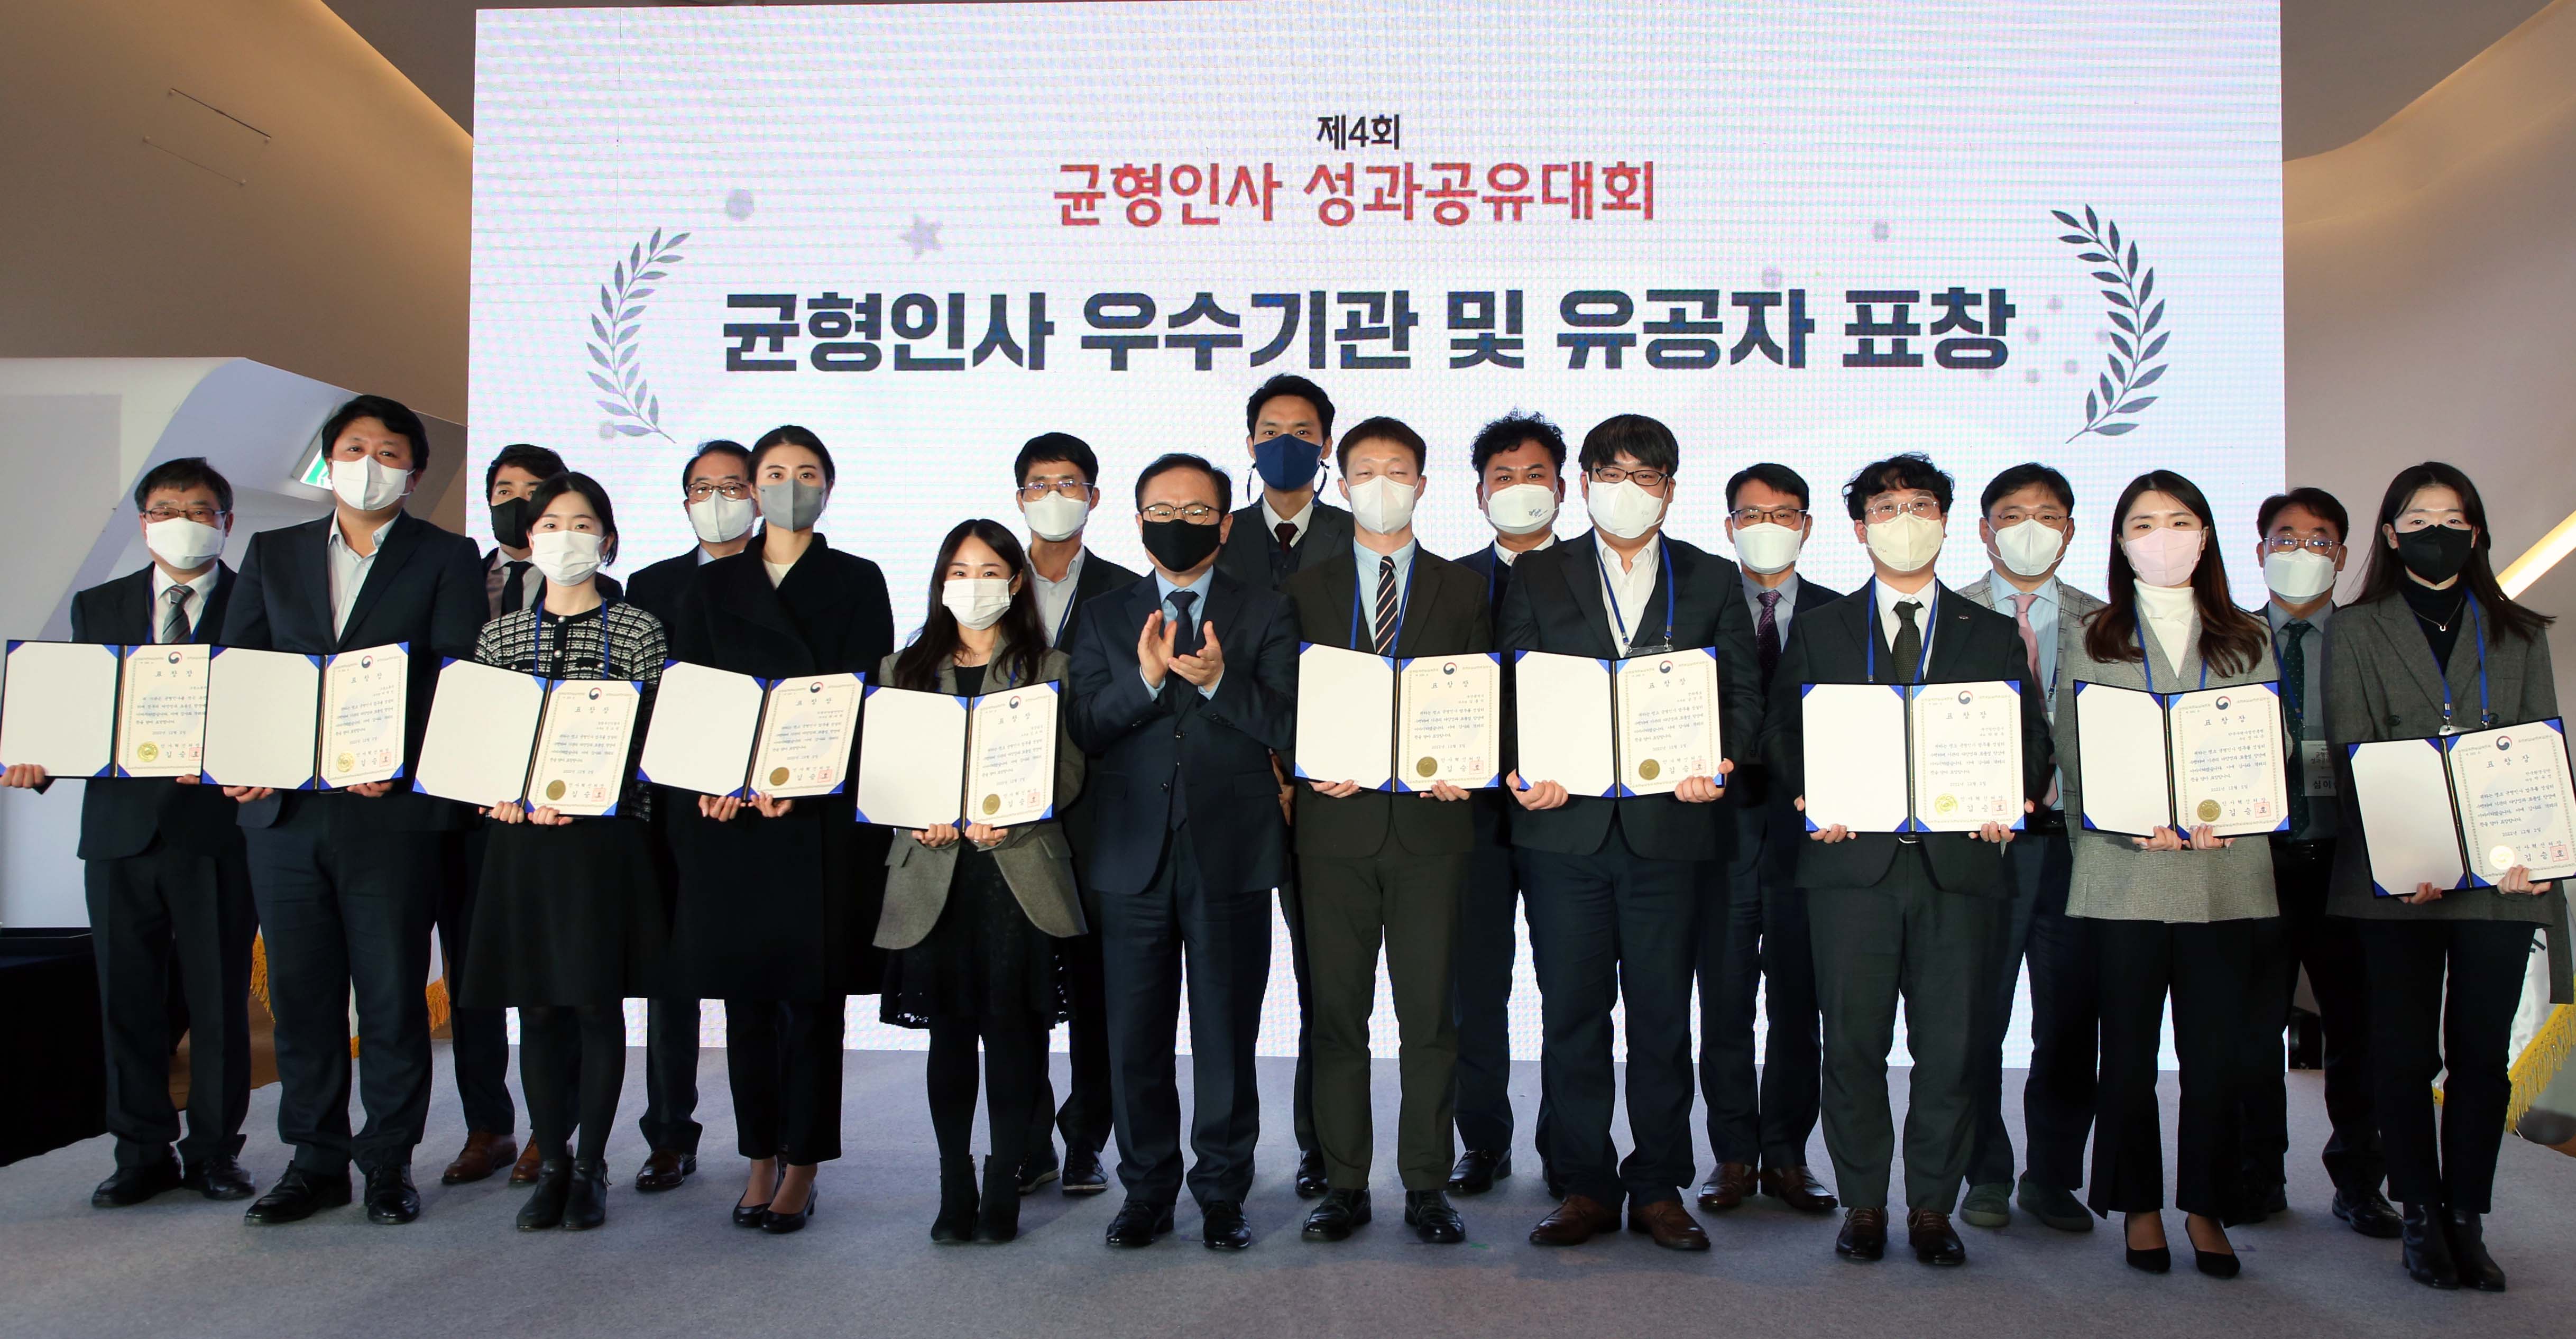 김승호 인사혁신처장(가운데)이 12월 2일 서울 동대문디자인플라자에서 열린 ‘제4회 균형인사 성과공유대회’에서 균형인사 우수기관과 업무유공자에 대한 시상을 한 뒤 수상자들과 함께 기념촬영을 하는 모습